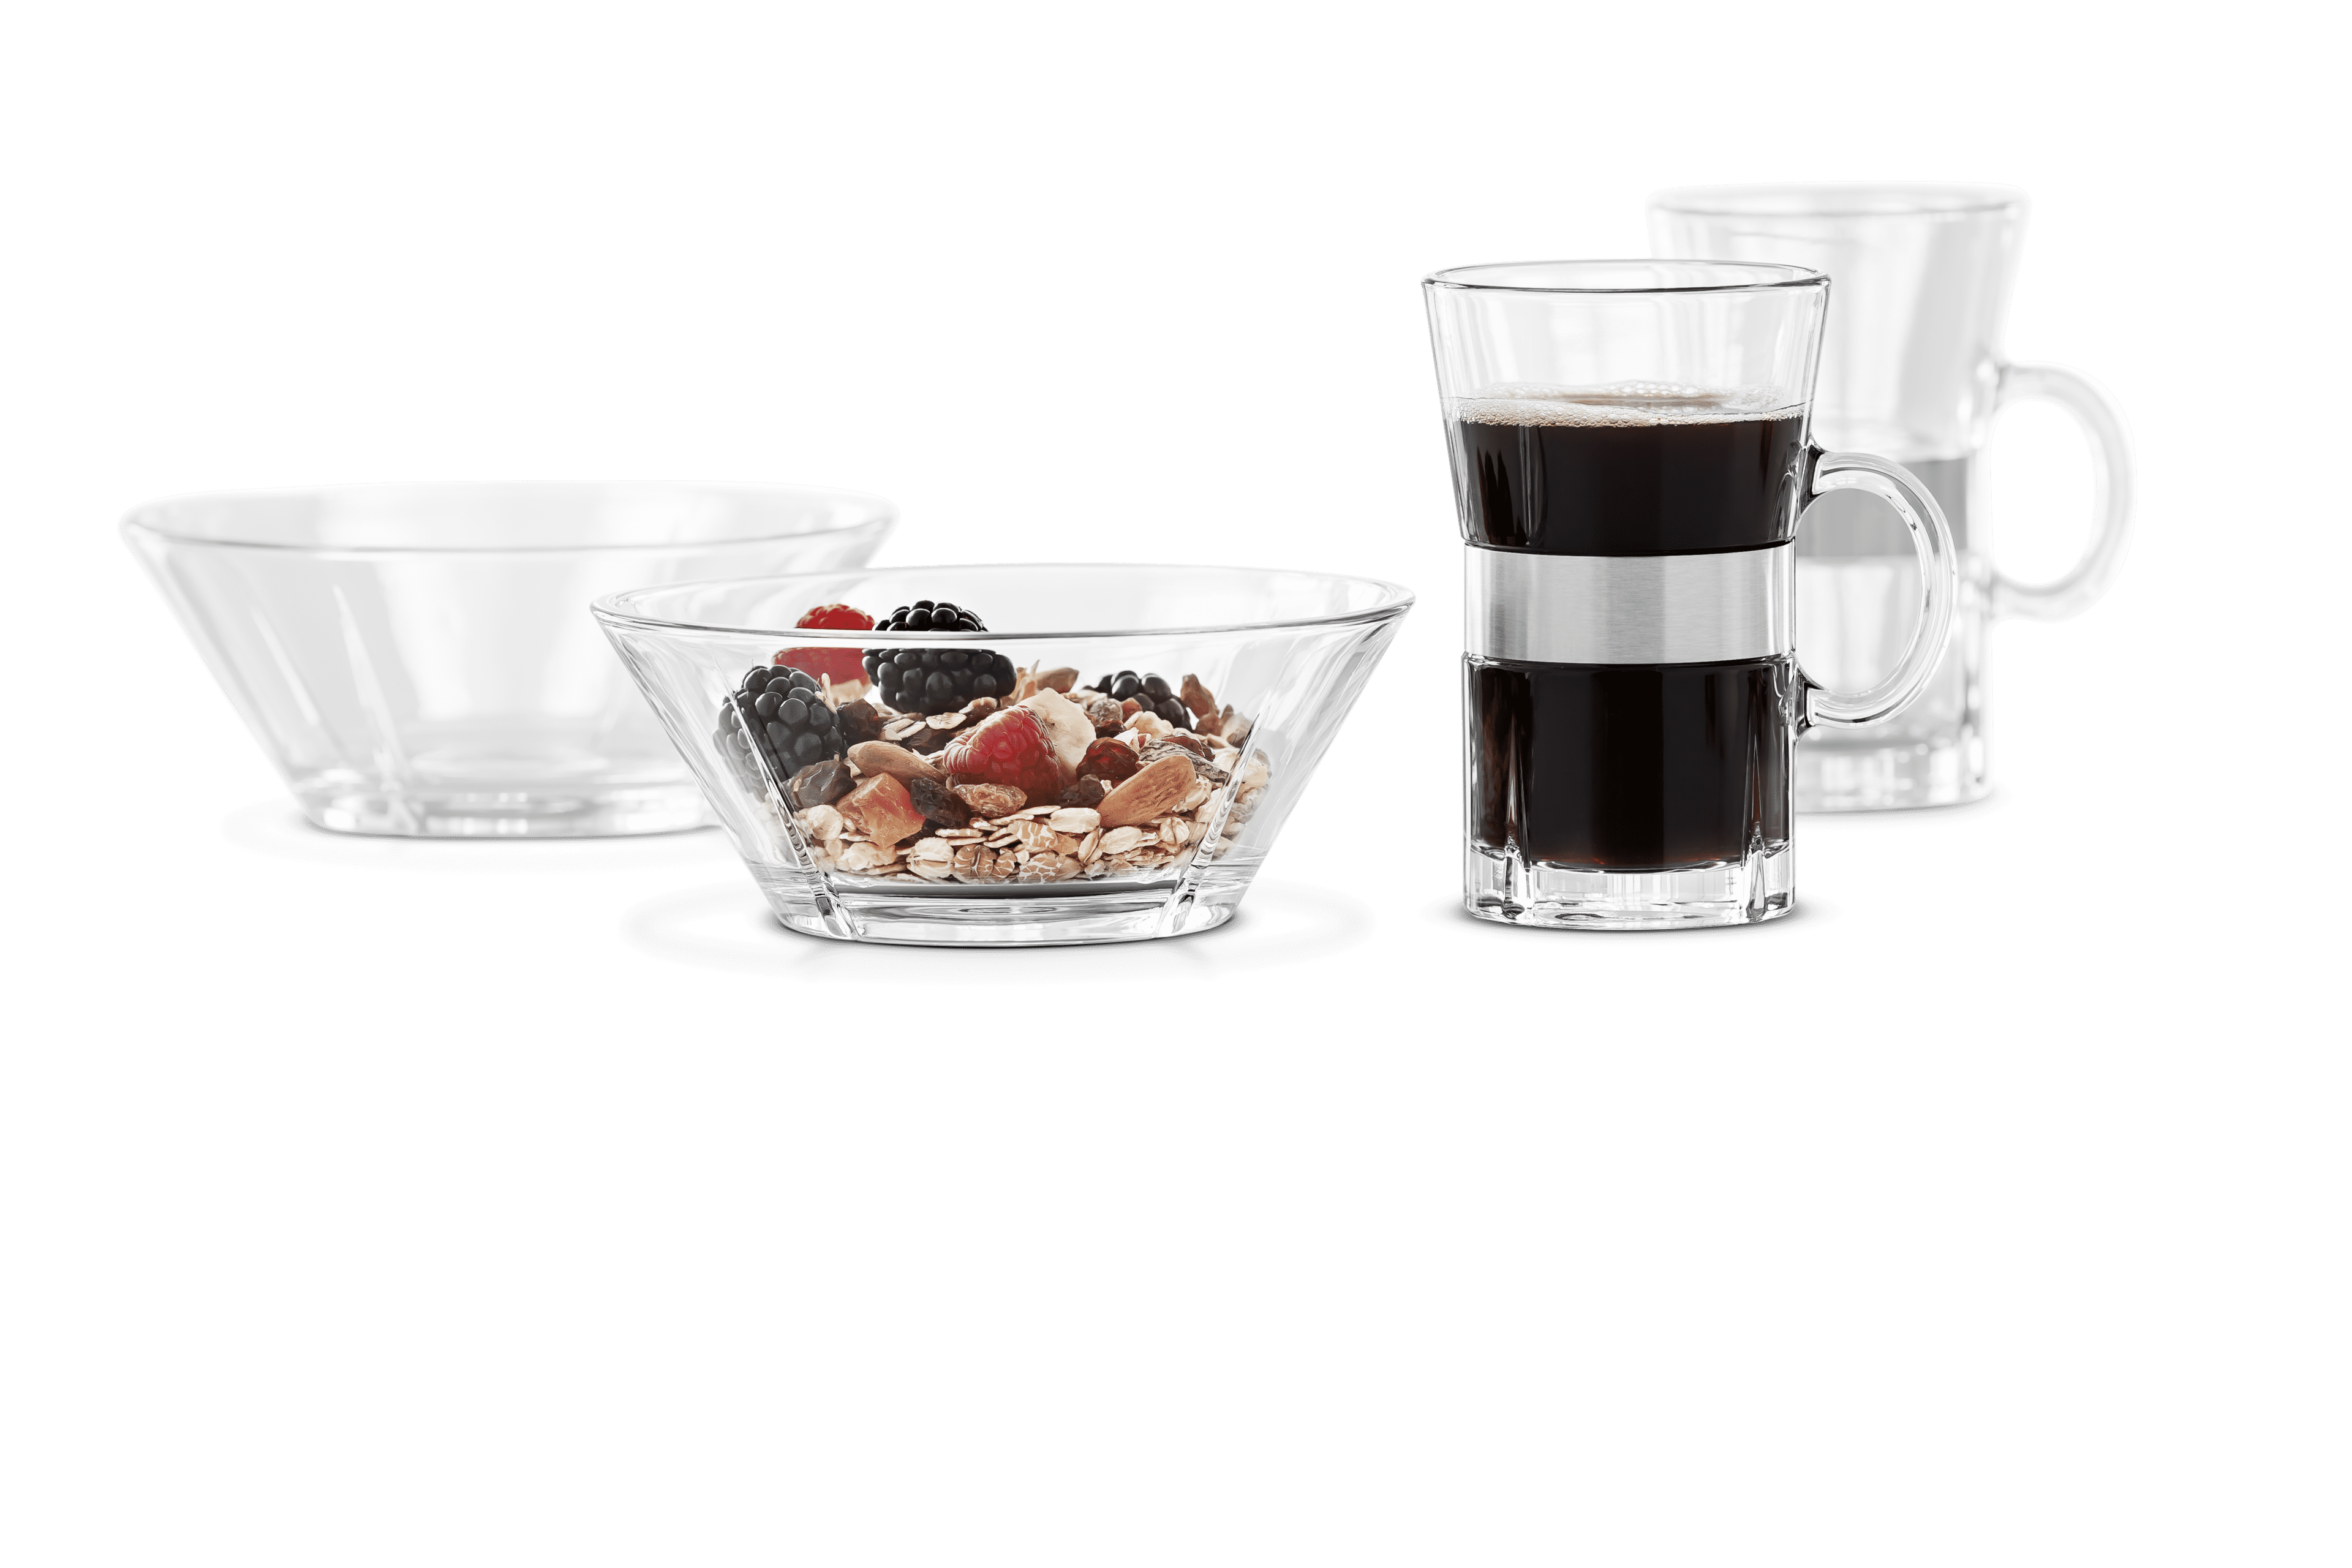 Morgenmadssæt 2 pers.: Hot drink og skål